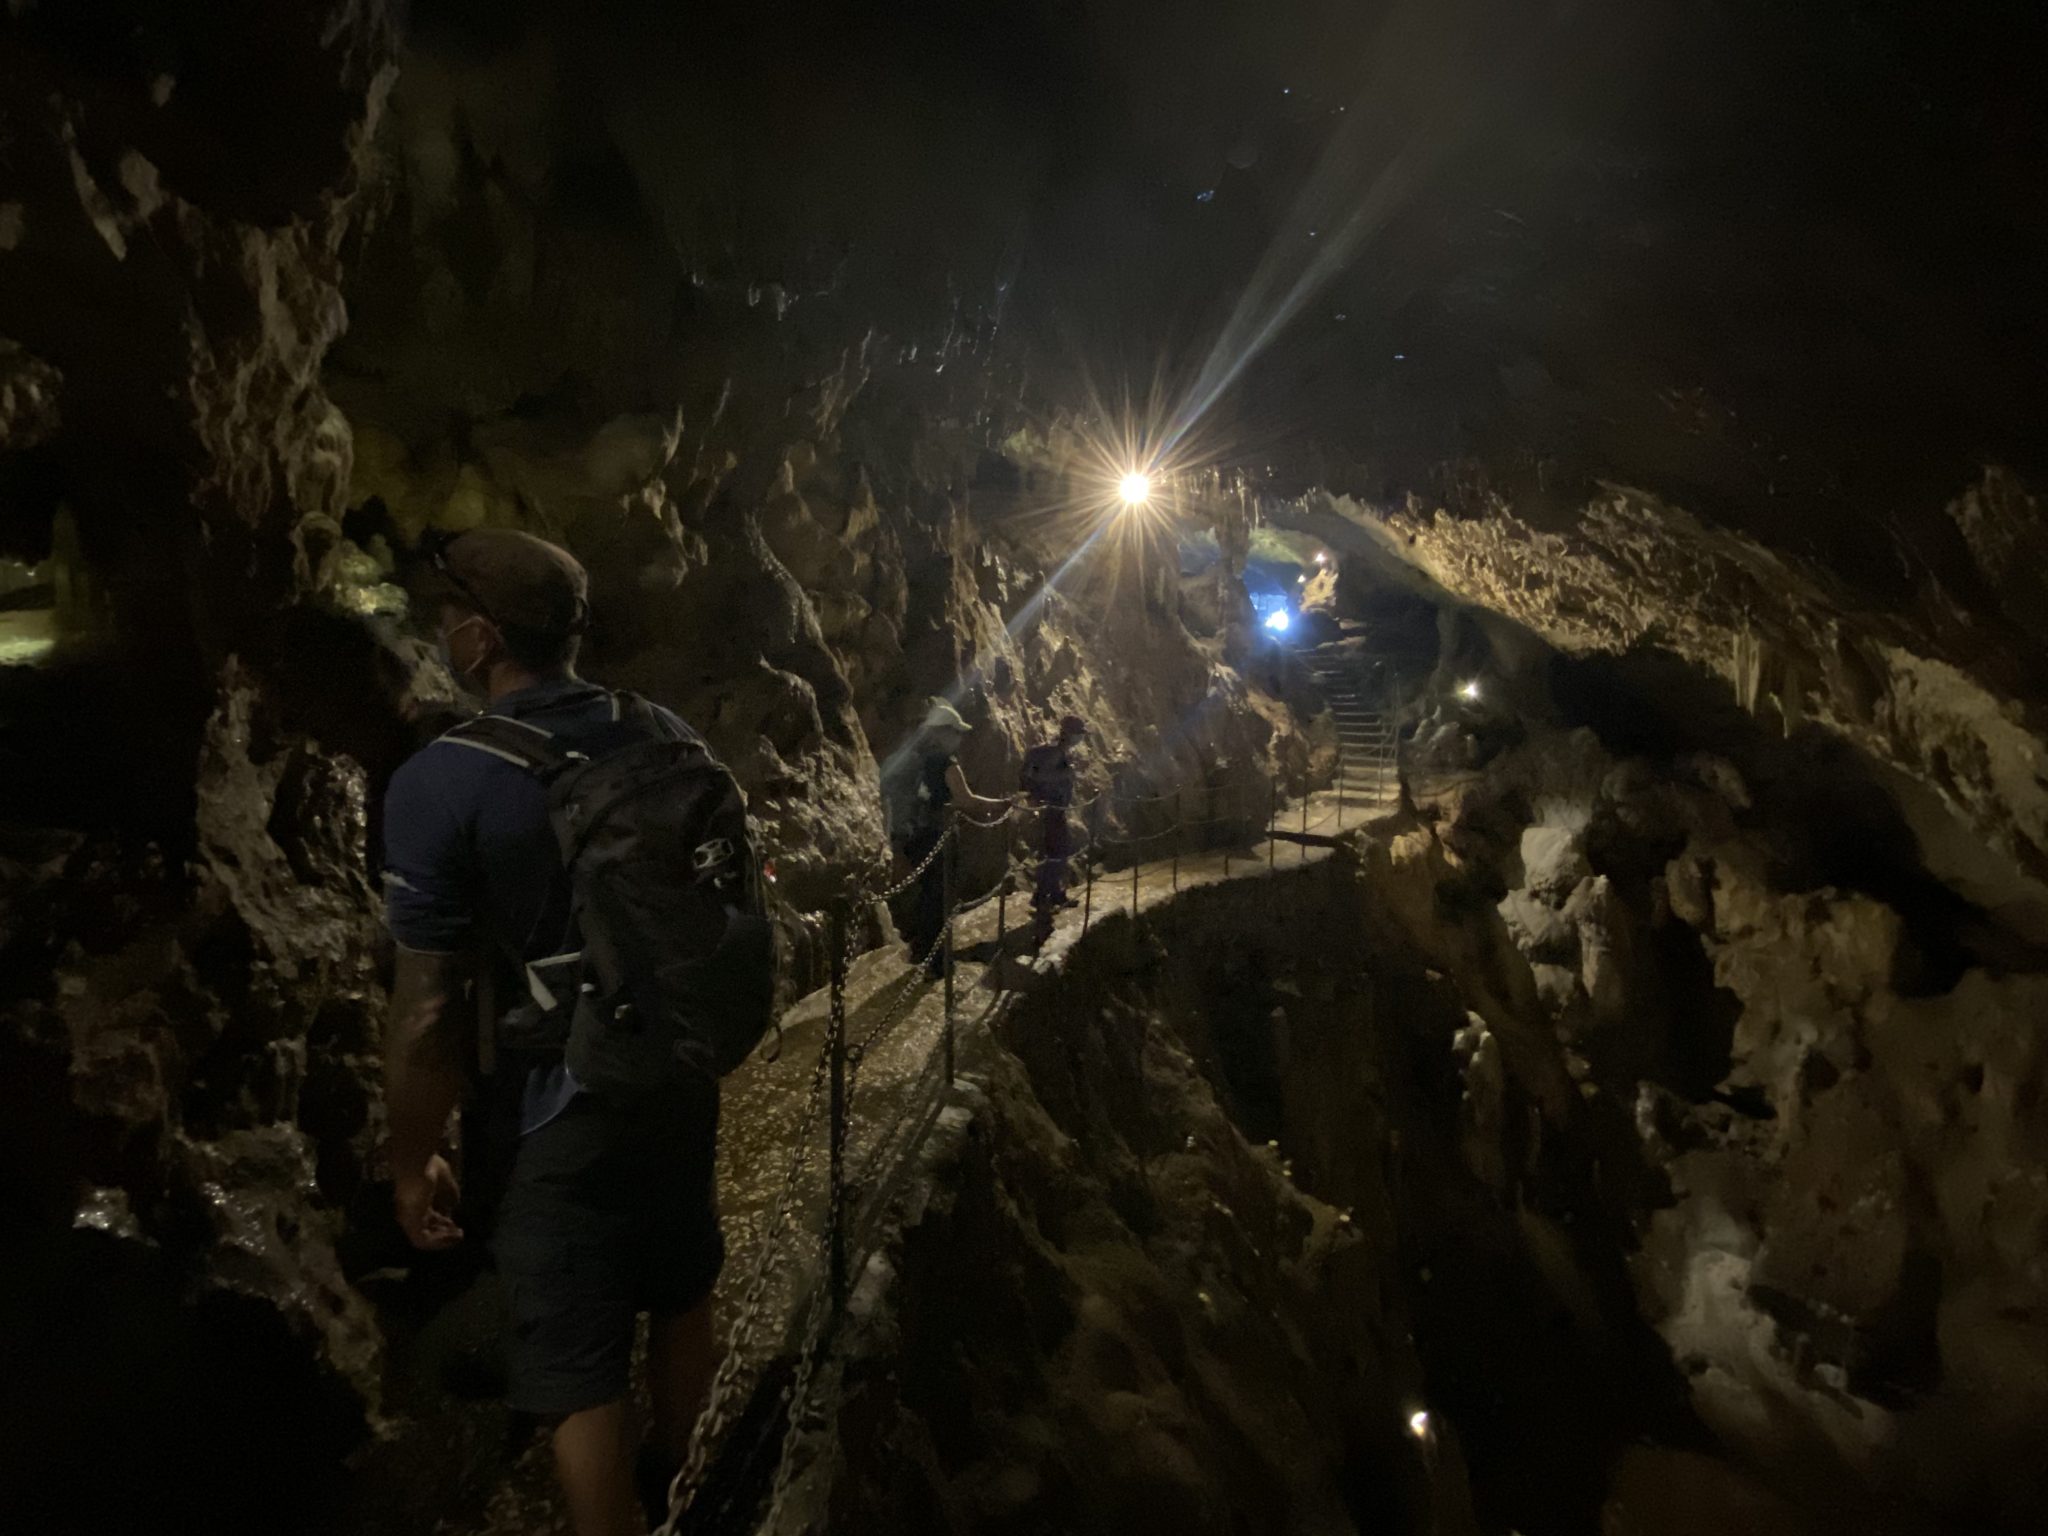 La Grotta Zinzulusa